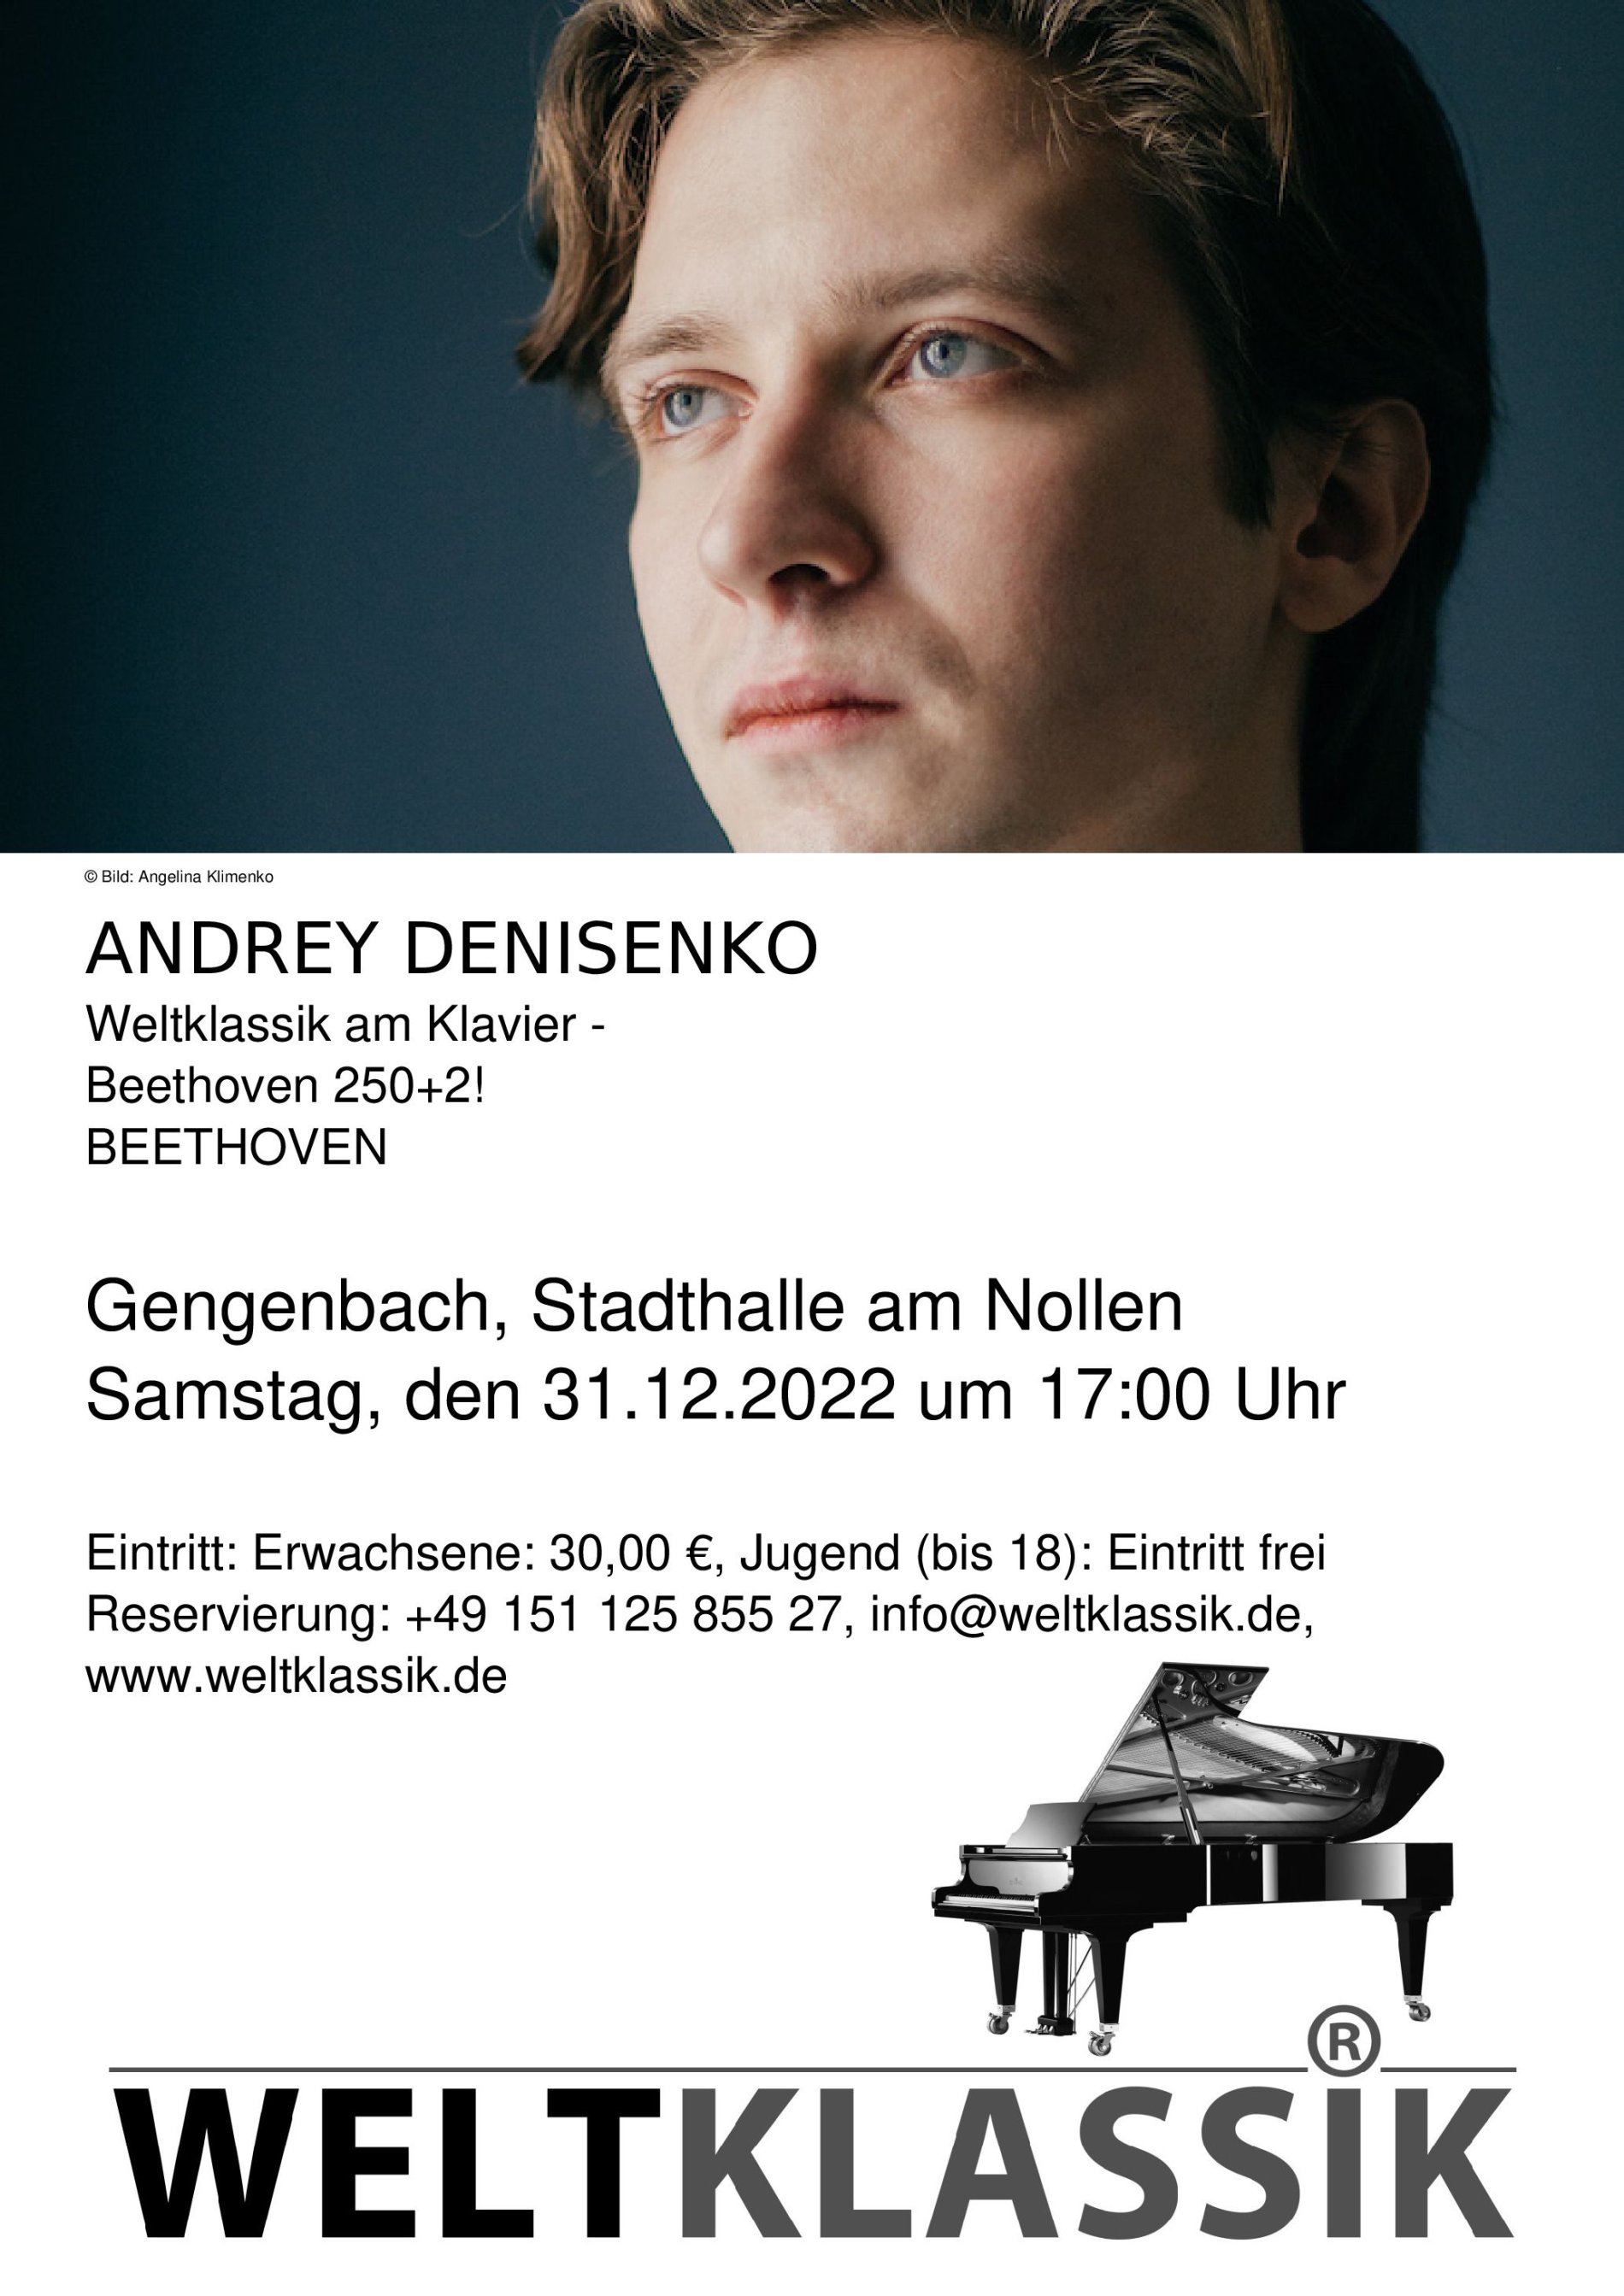 Andrey Denisenko / Urheber: Weltklassik am Klavier